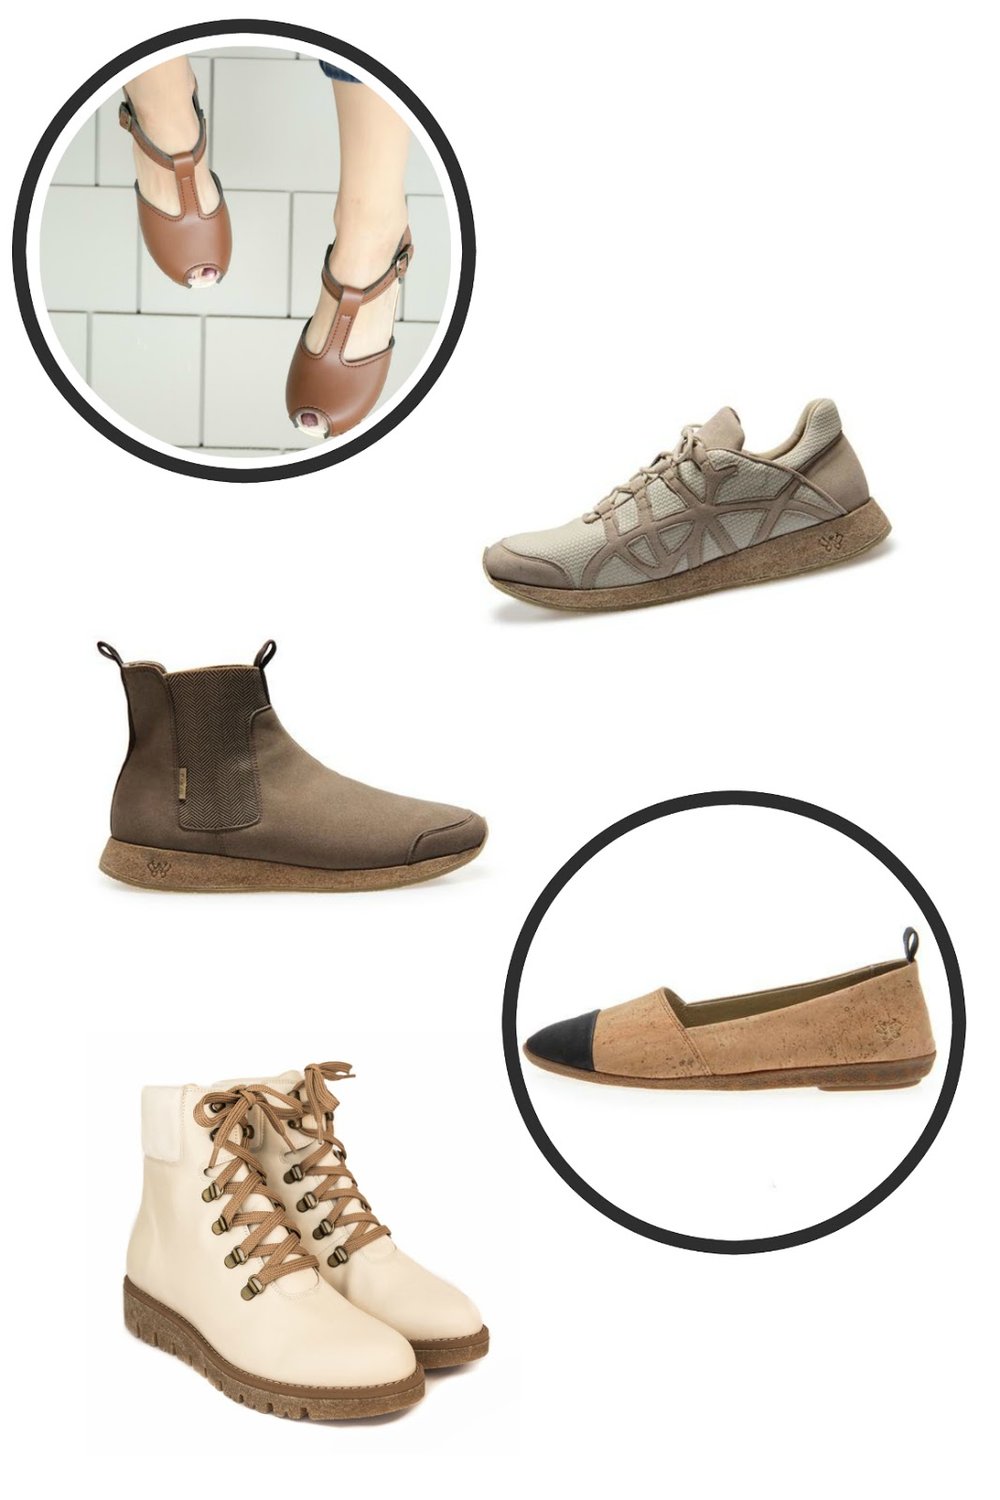 eco friendly fair trade vegan shoes po-zu nicora bhava stylewise-blog.com